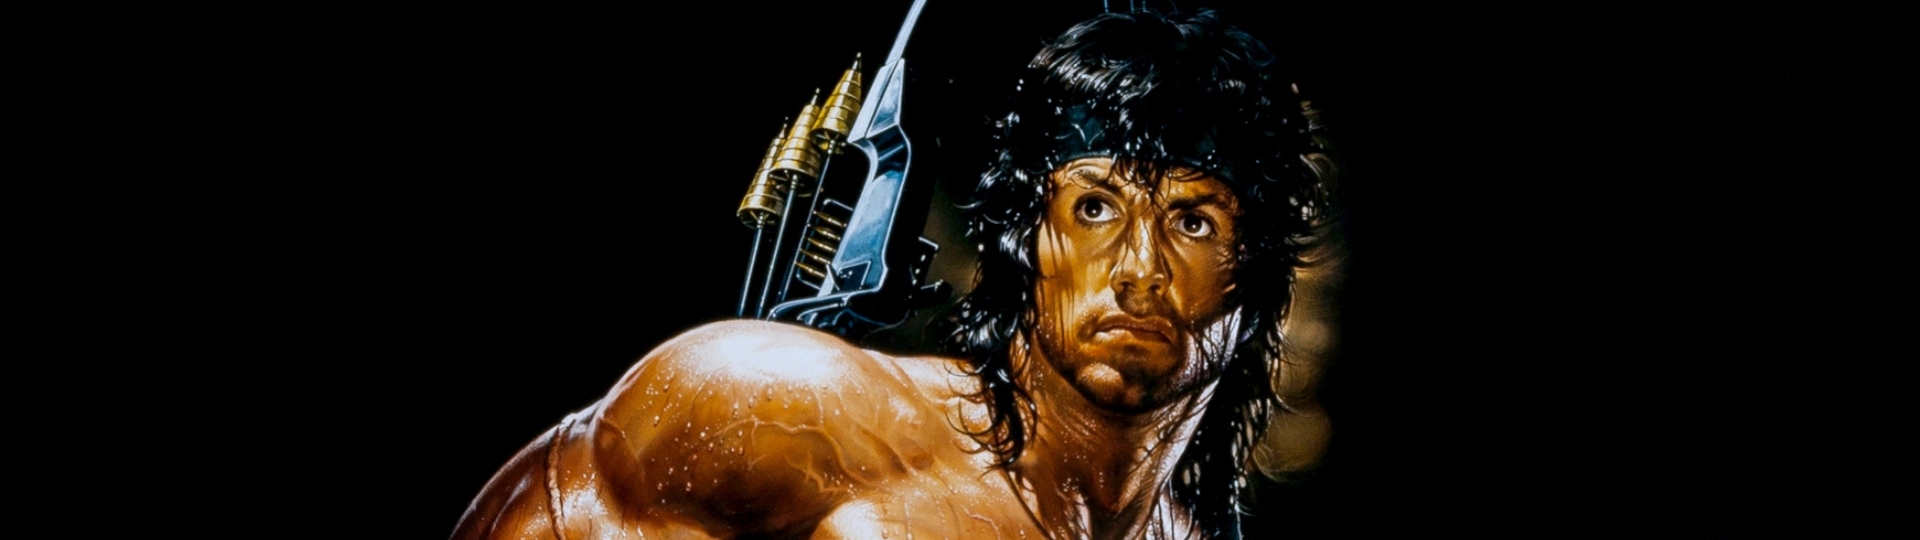 Rambo by se měl podívat do Call of Duty už v květnu | Novinky